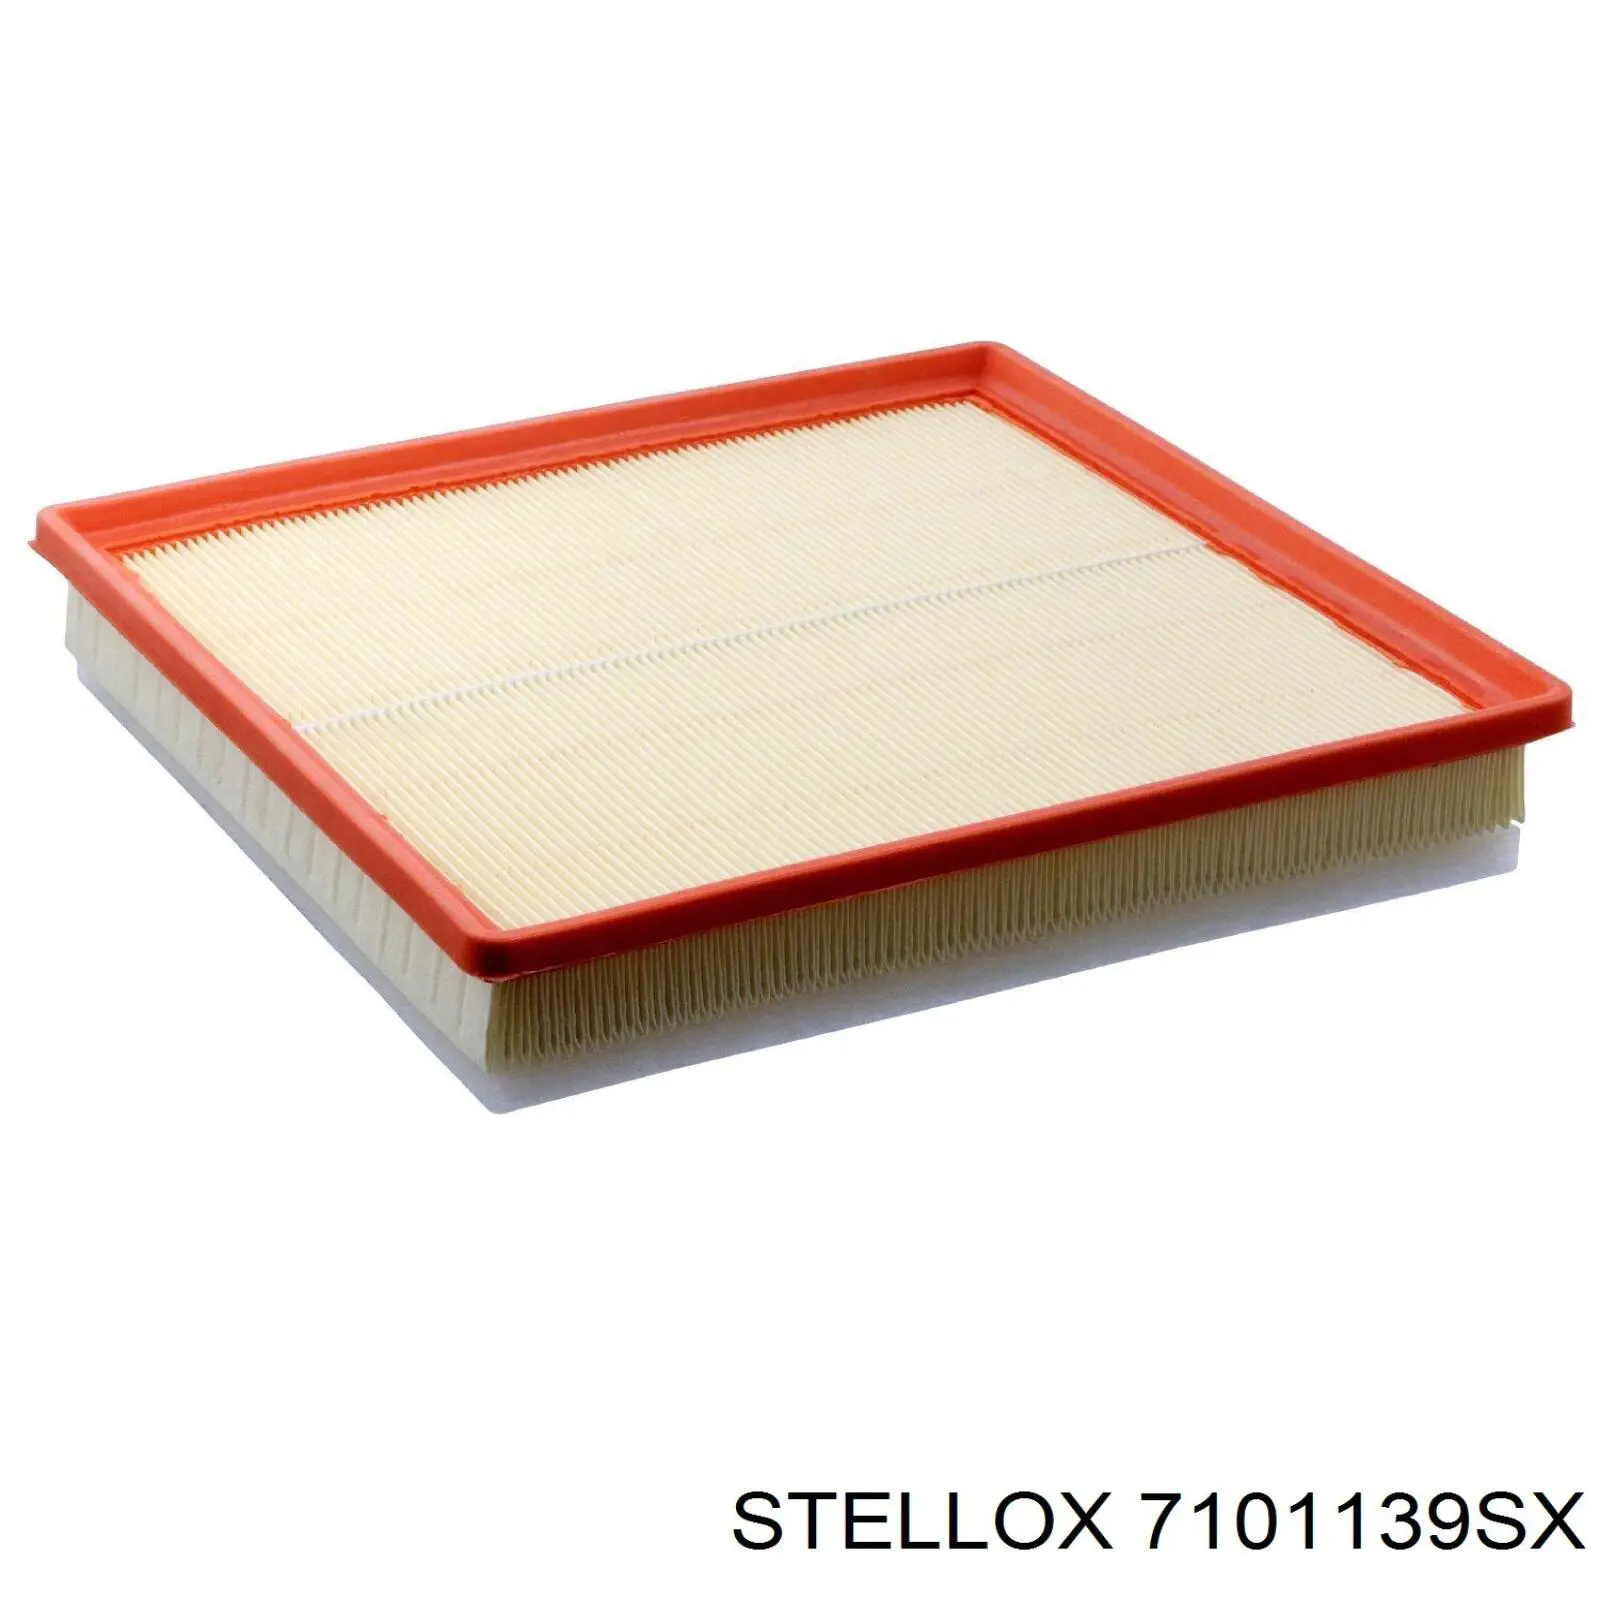 7101139SX Stellox filtro de aire